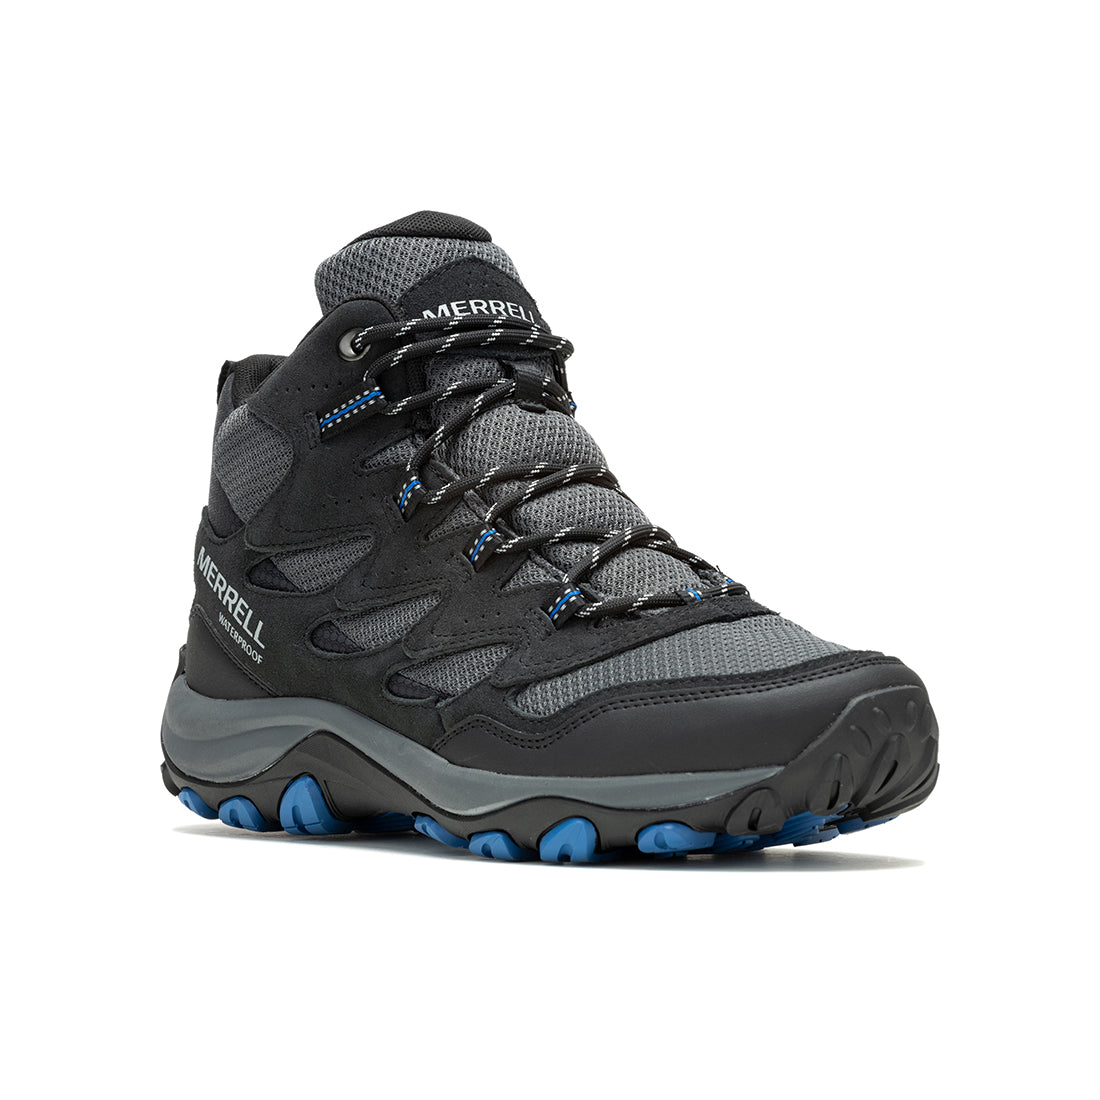 West Rim Mid Waterproof -Black/Blue Mens Hiking Shoes - 0